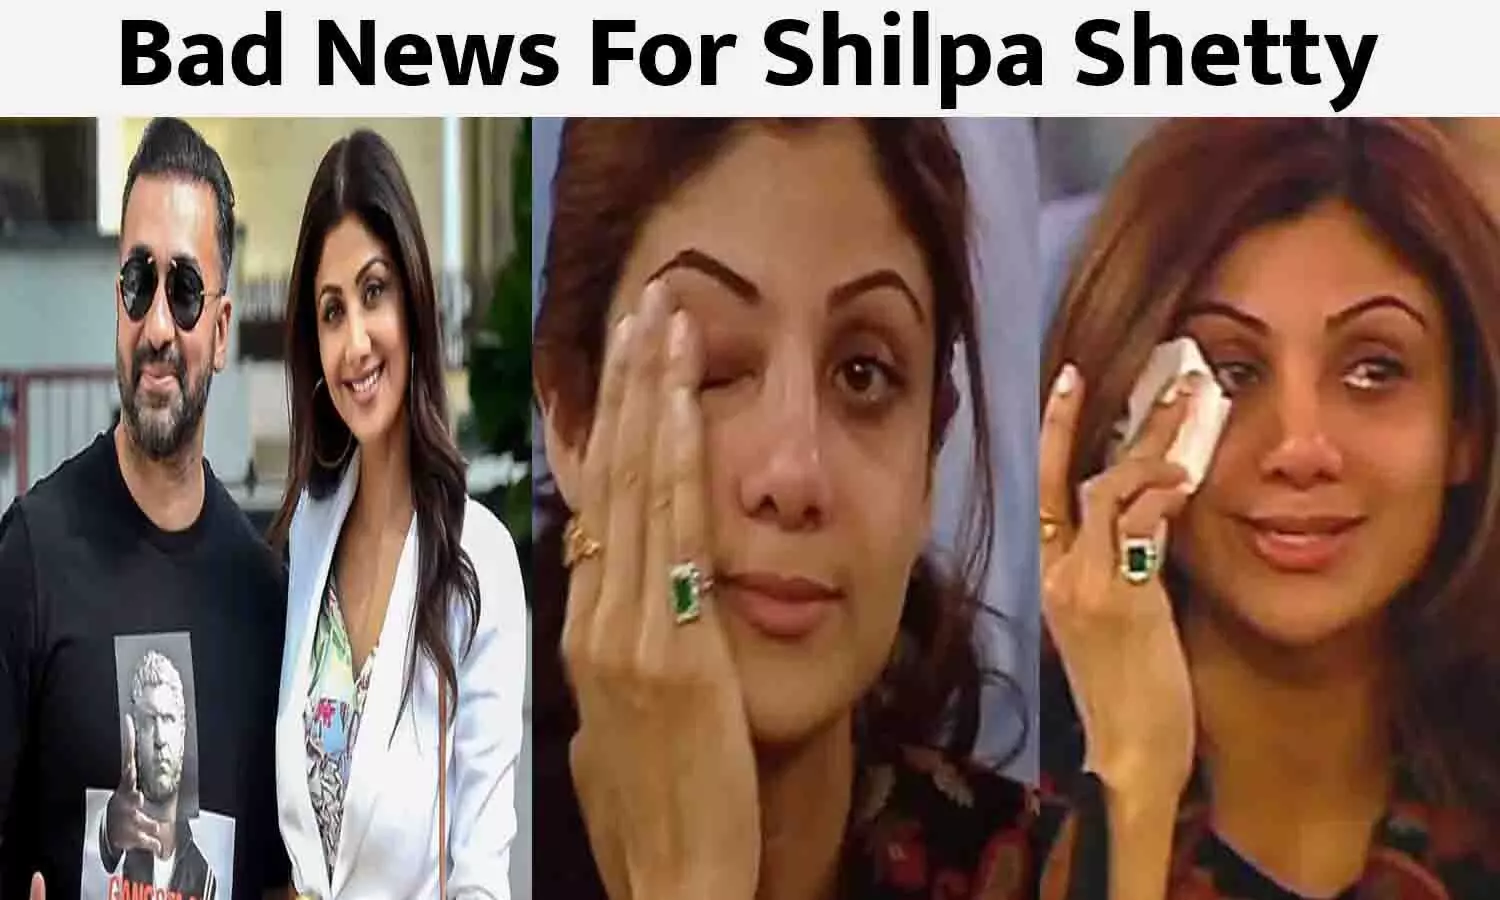 Bad News For Shilpa Shetty